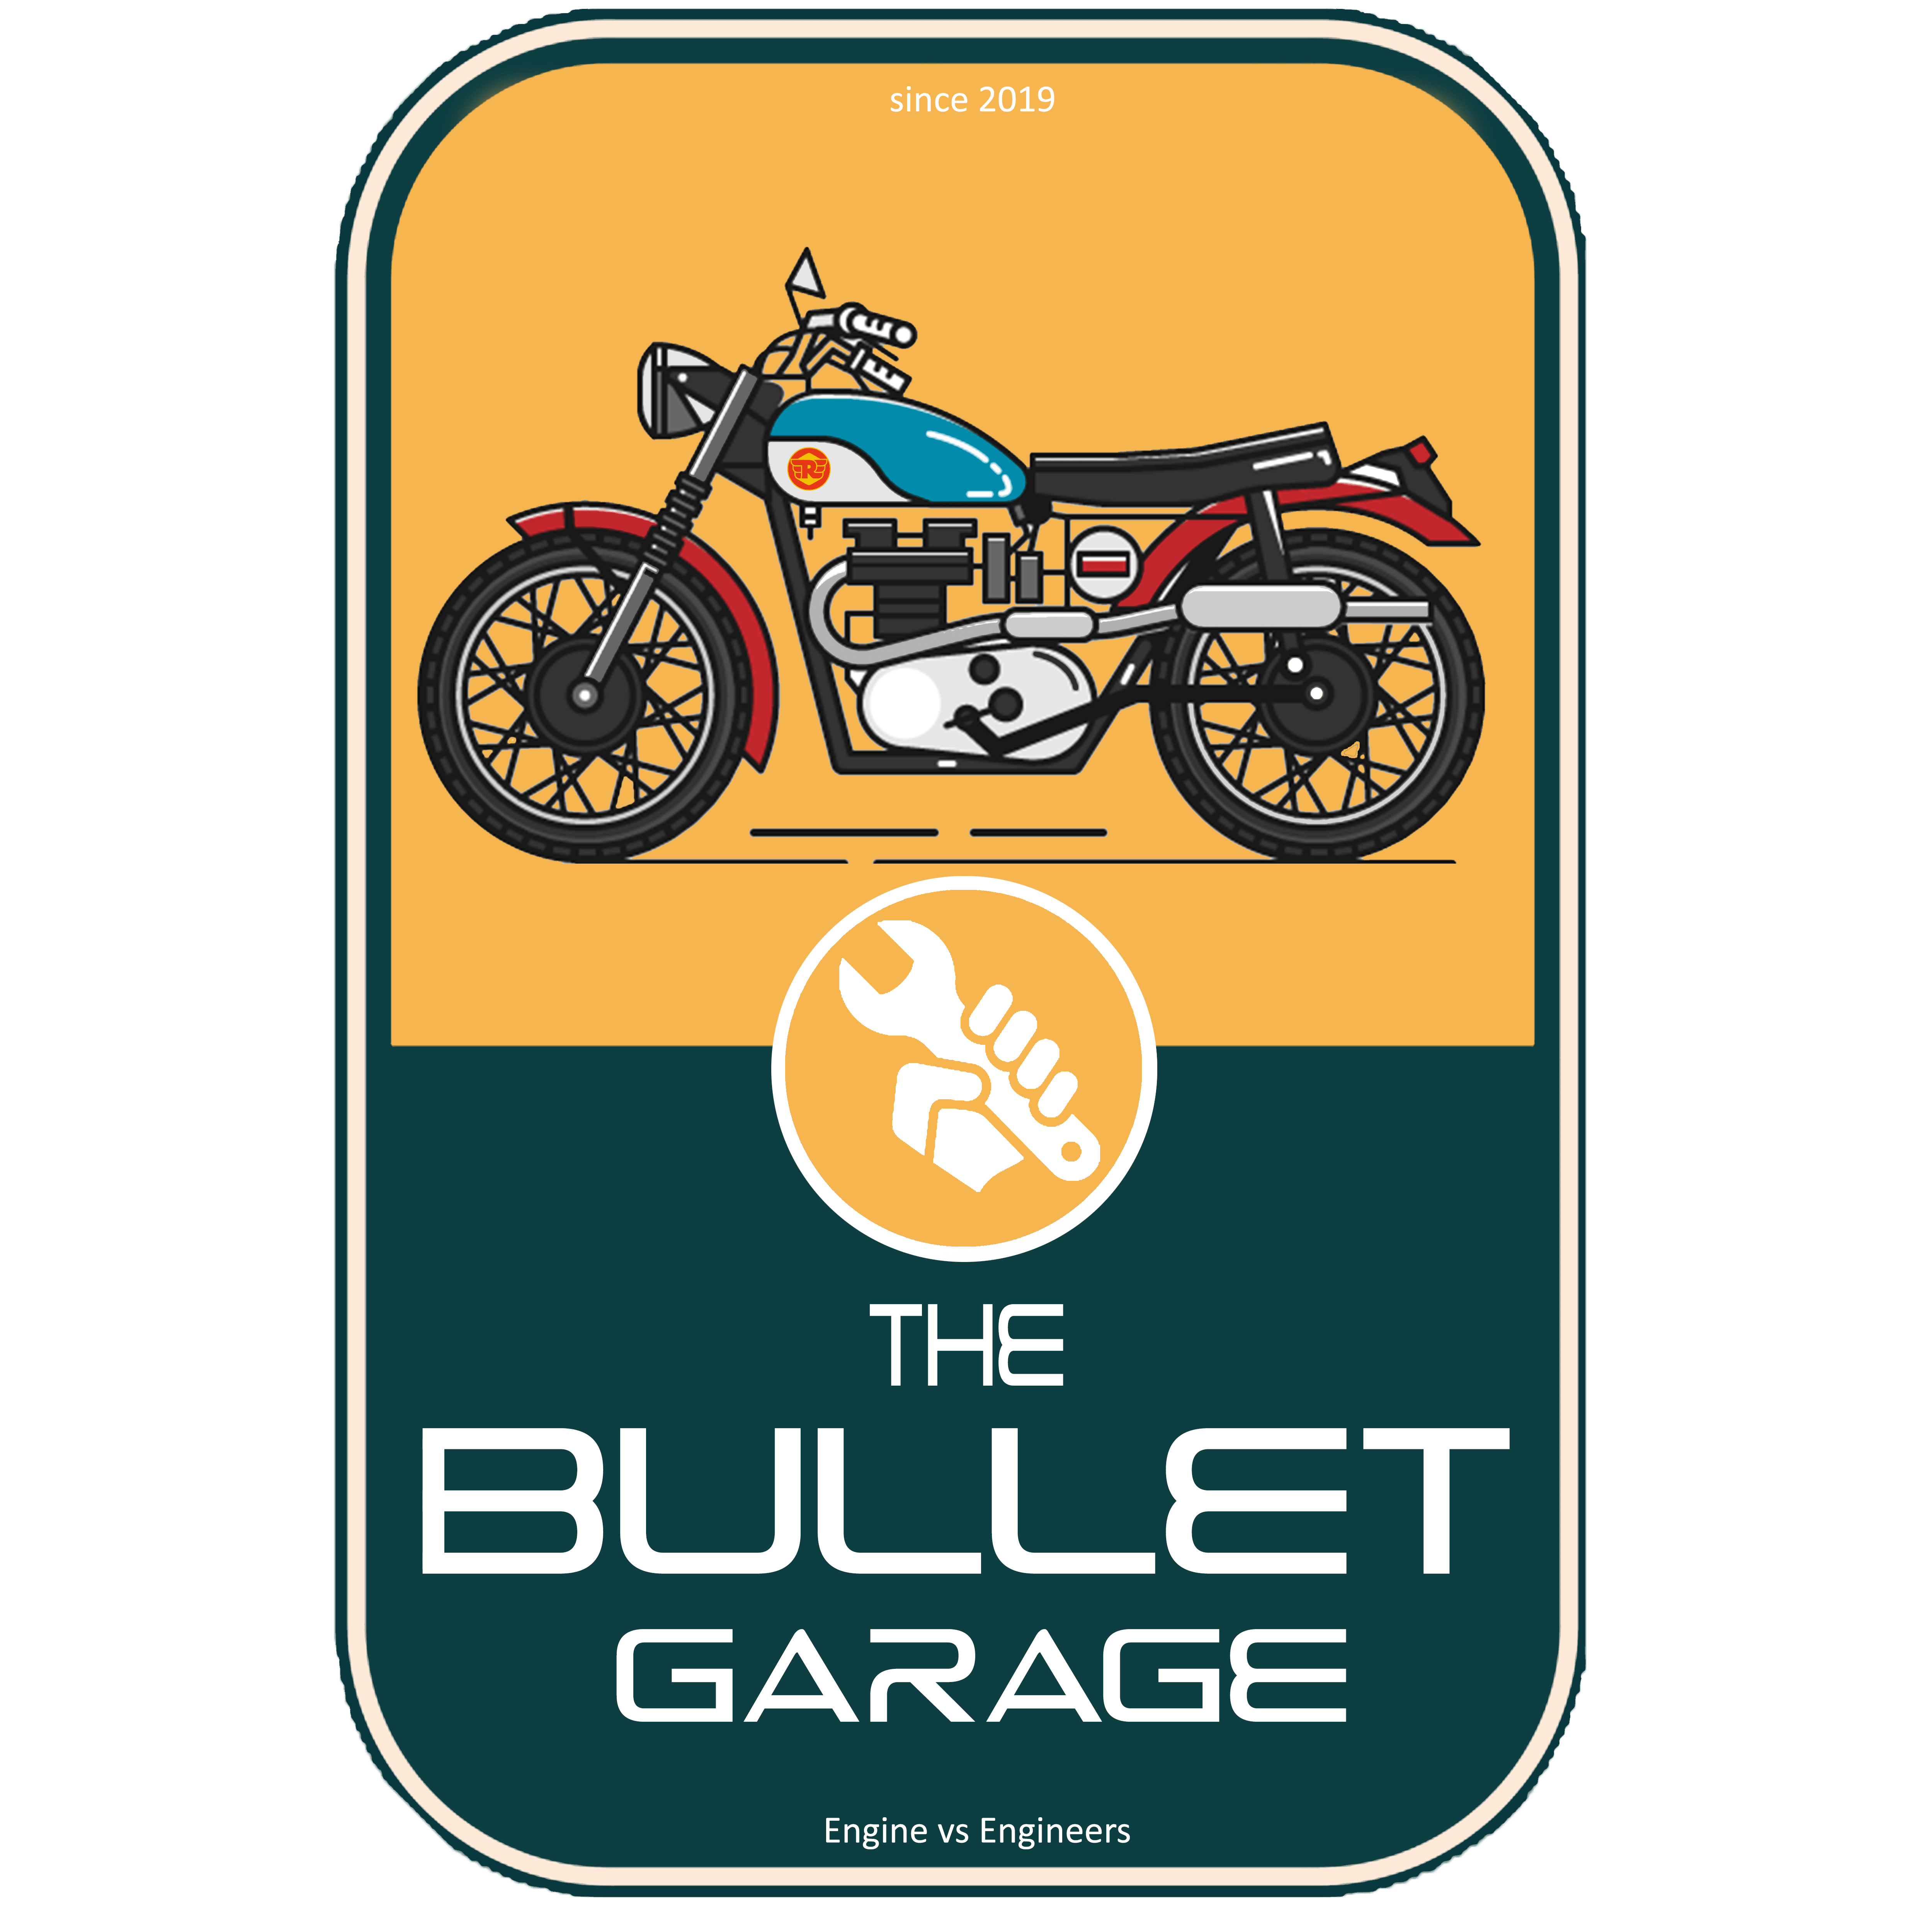 THE BULLET GARAGE